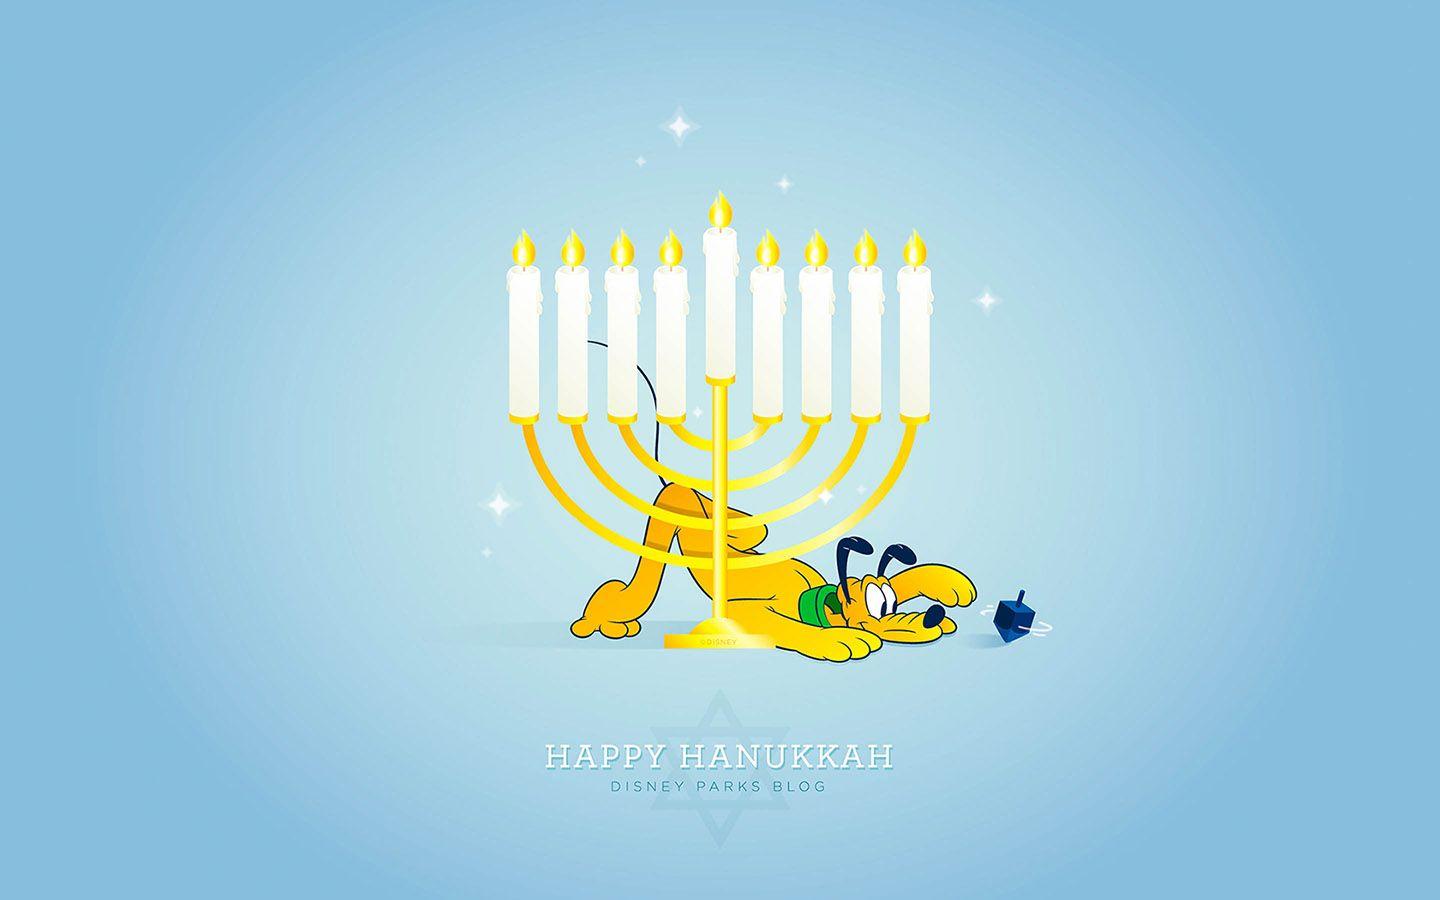 1440x900 Kỷ niệm Hanukkah với Hình nền Công viên Disney mới nhất của chúng tôi